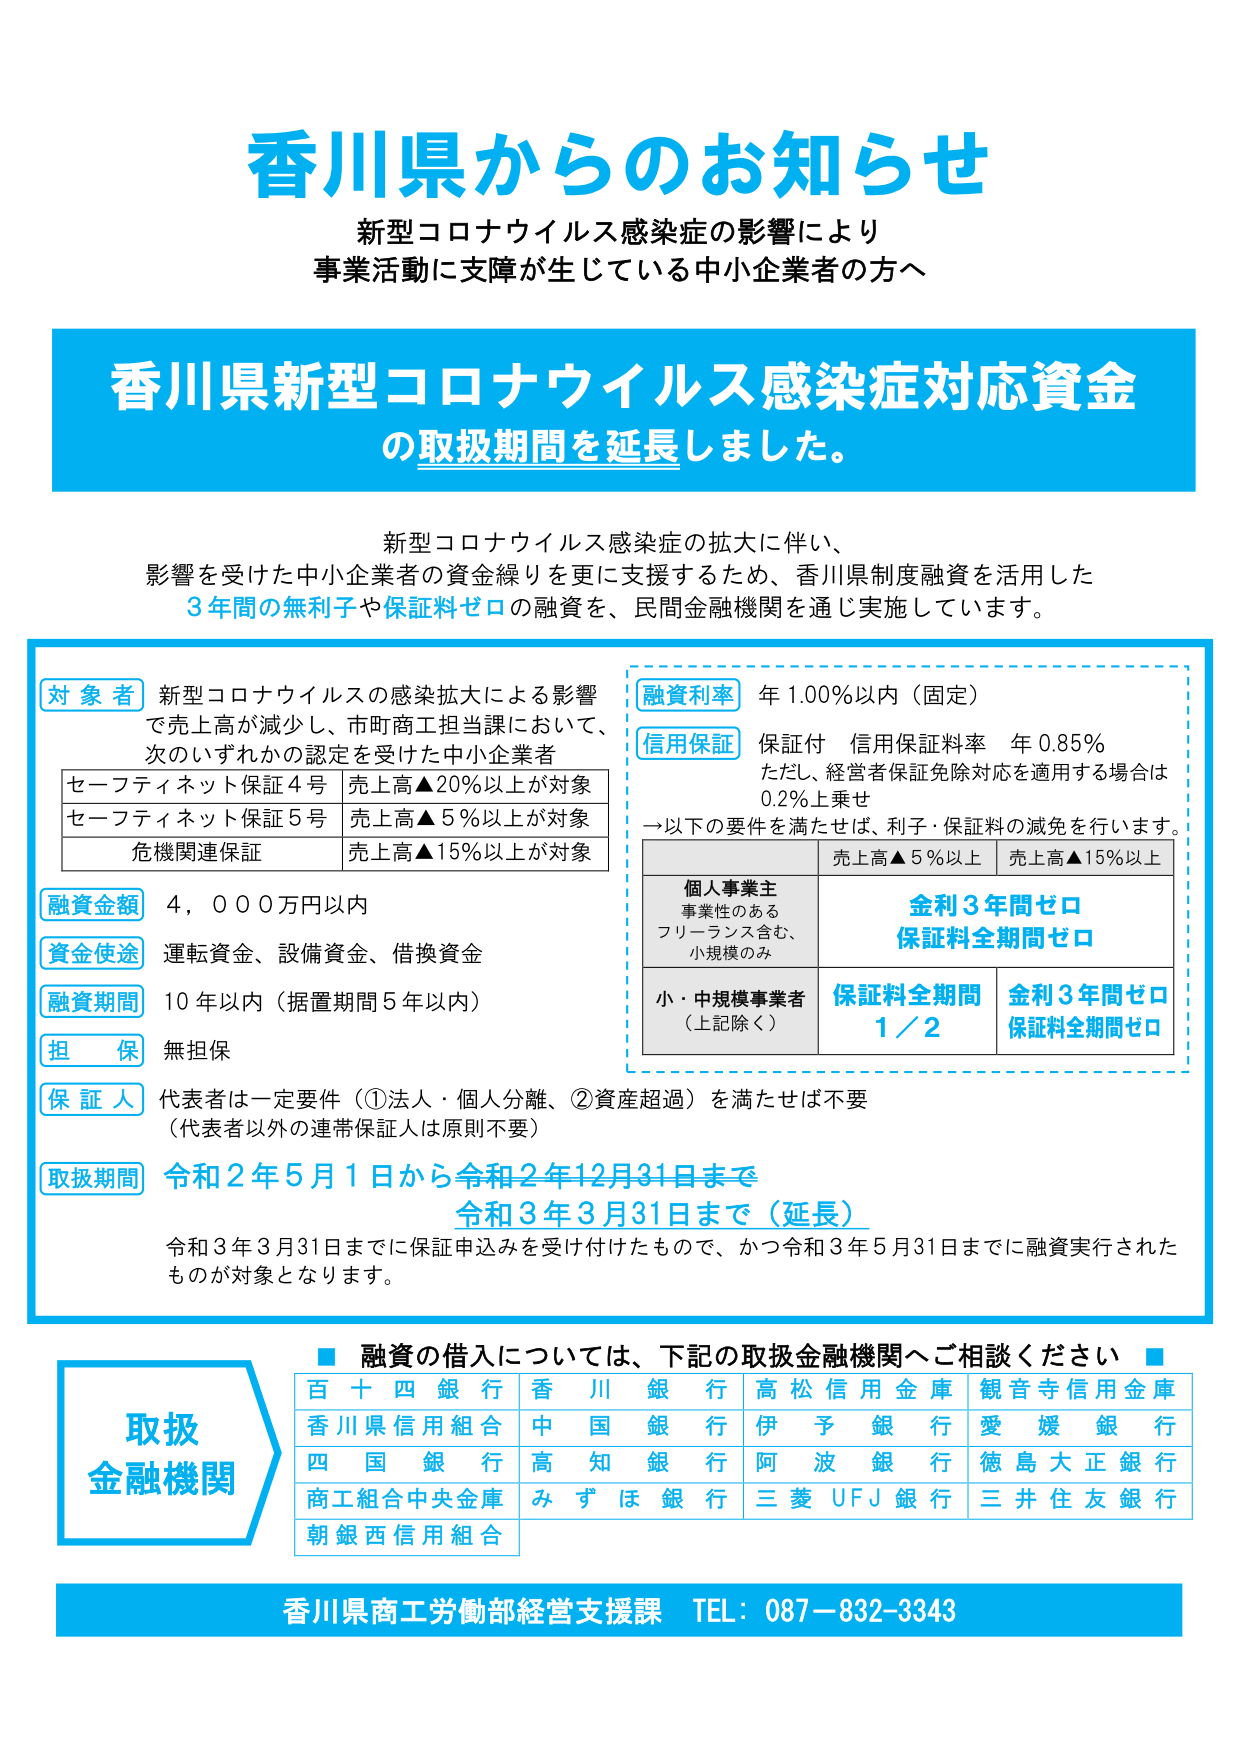 「香川県新型コロナウイルス感染症対応資金」の取扱期間が延長されました